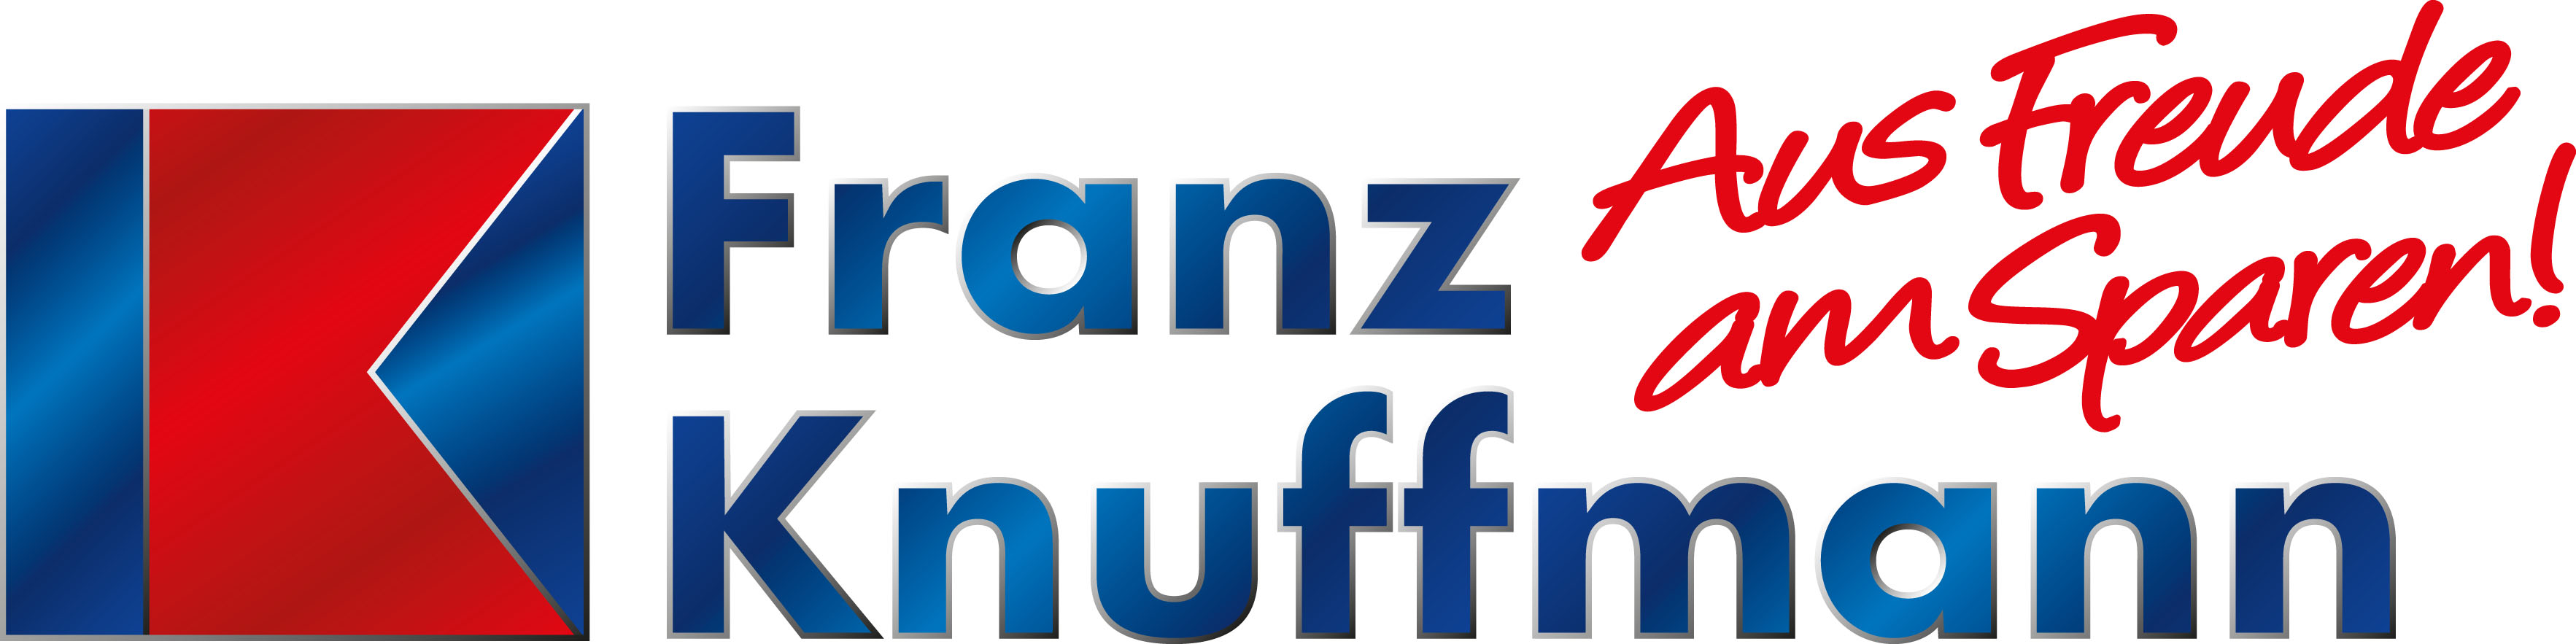 Einrichtungshaus Franz Knuffmann GmbH & Co. KG